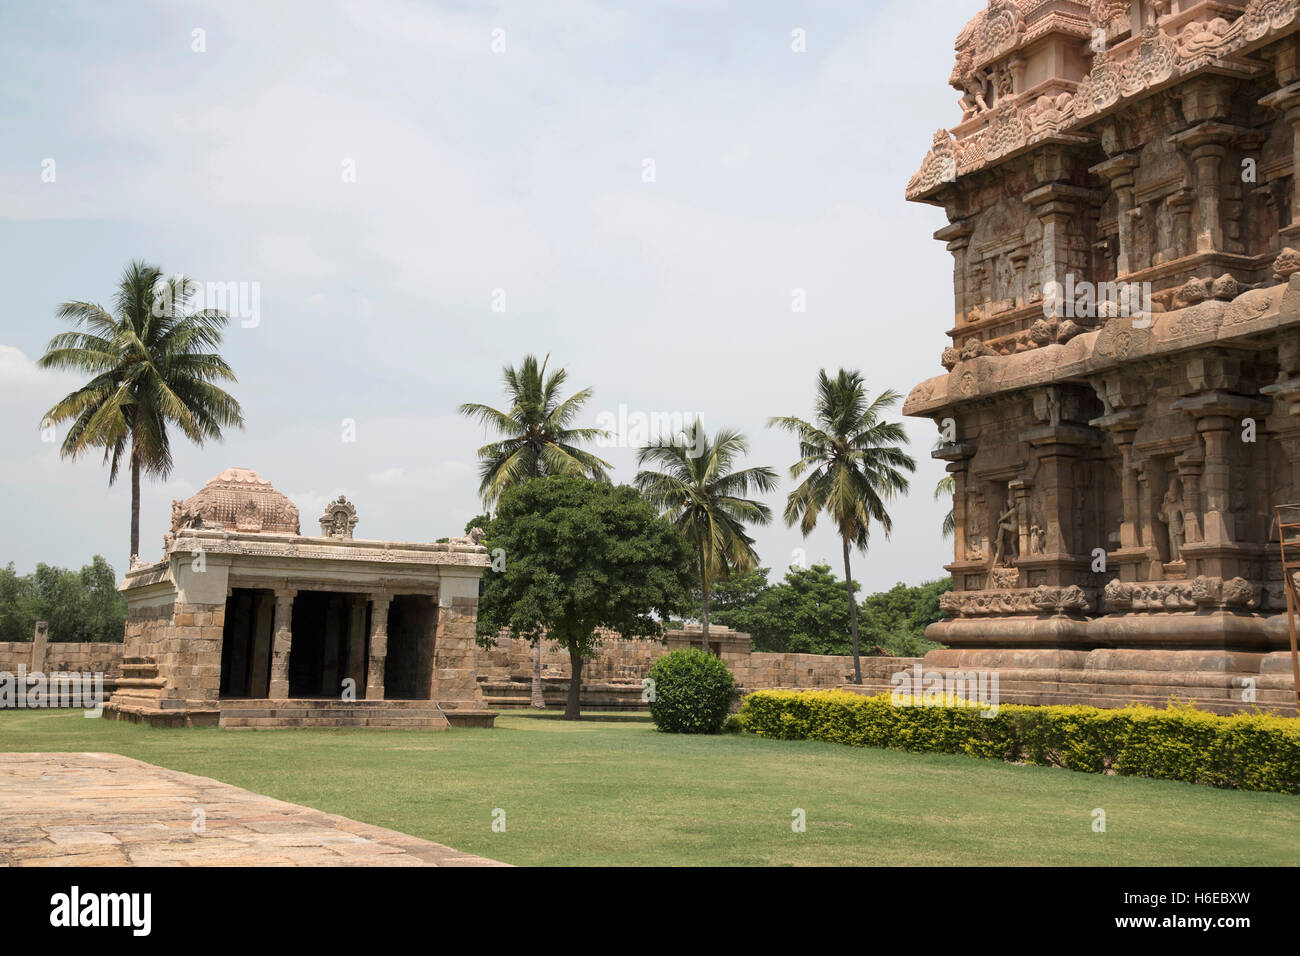 Le temple ganesh dans le coin sud-ouest. temple de Brihadisvara, complexe gangaikondacholapuram, Tamil Nadu, Inde.vue depuis l'Est. Banque D'Images